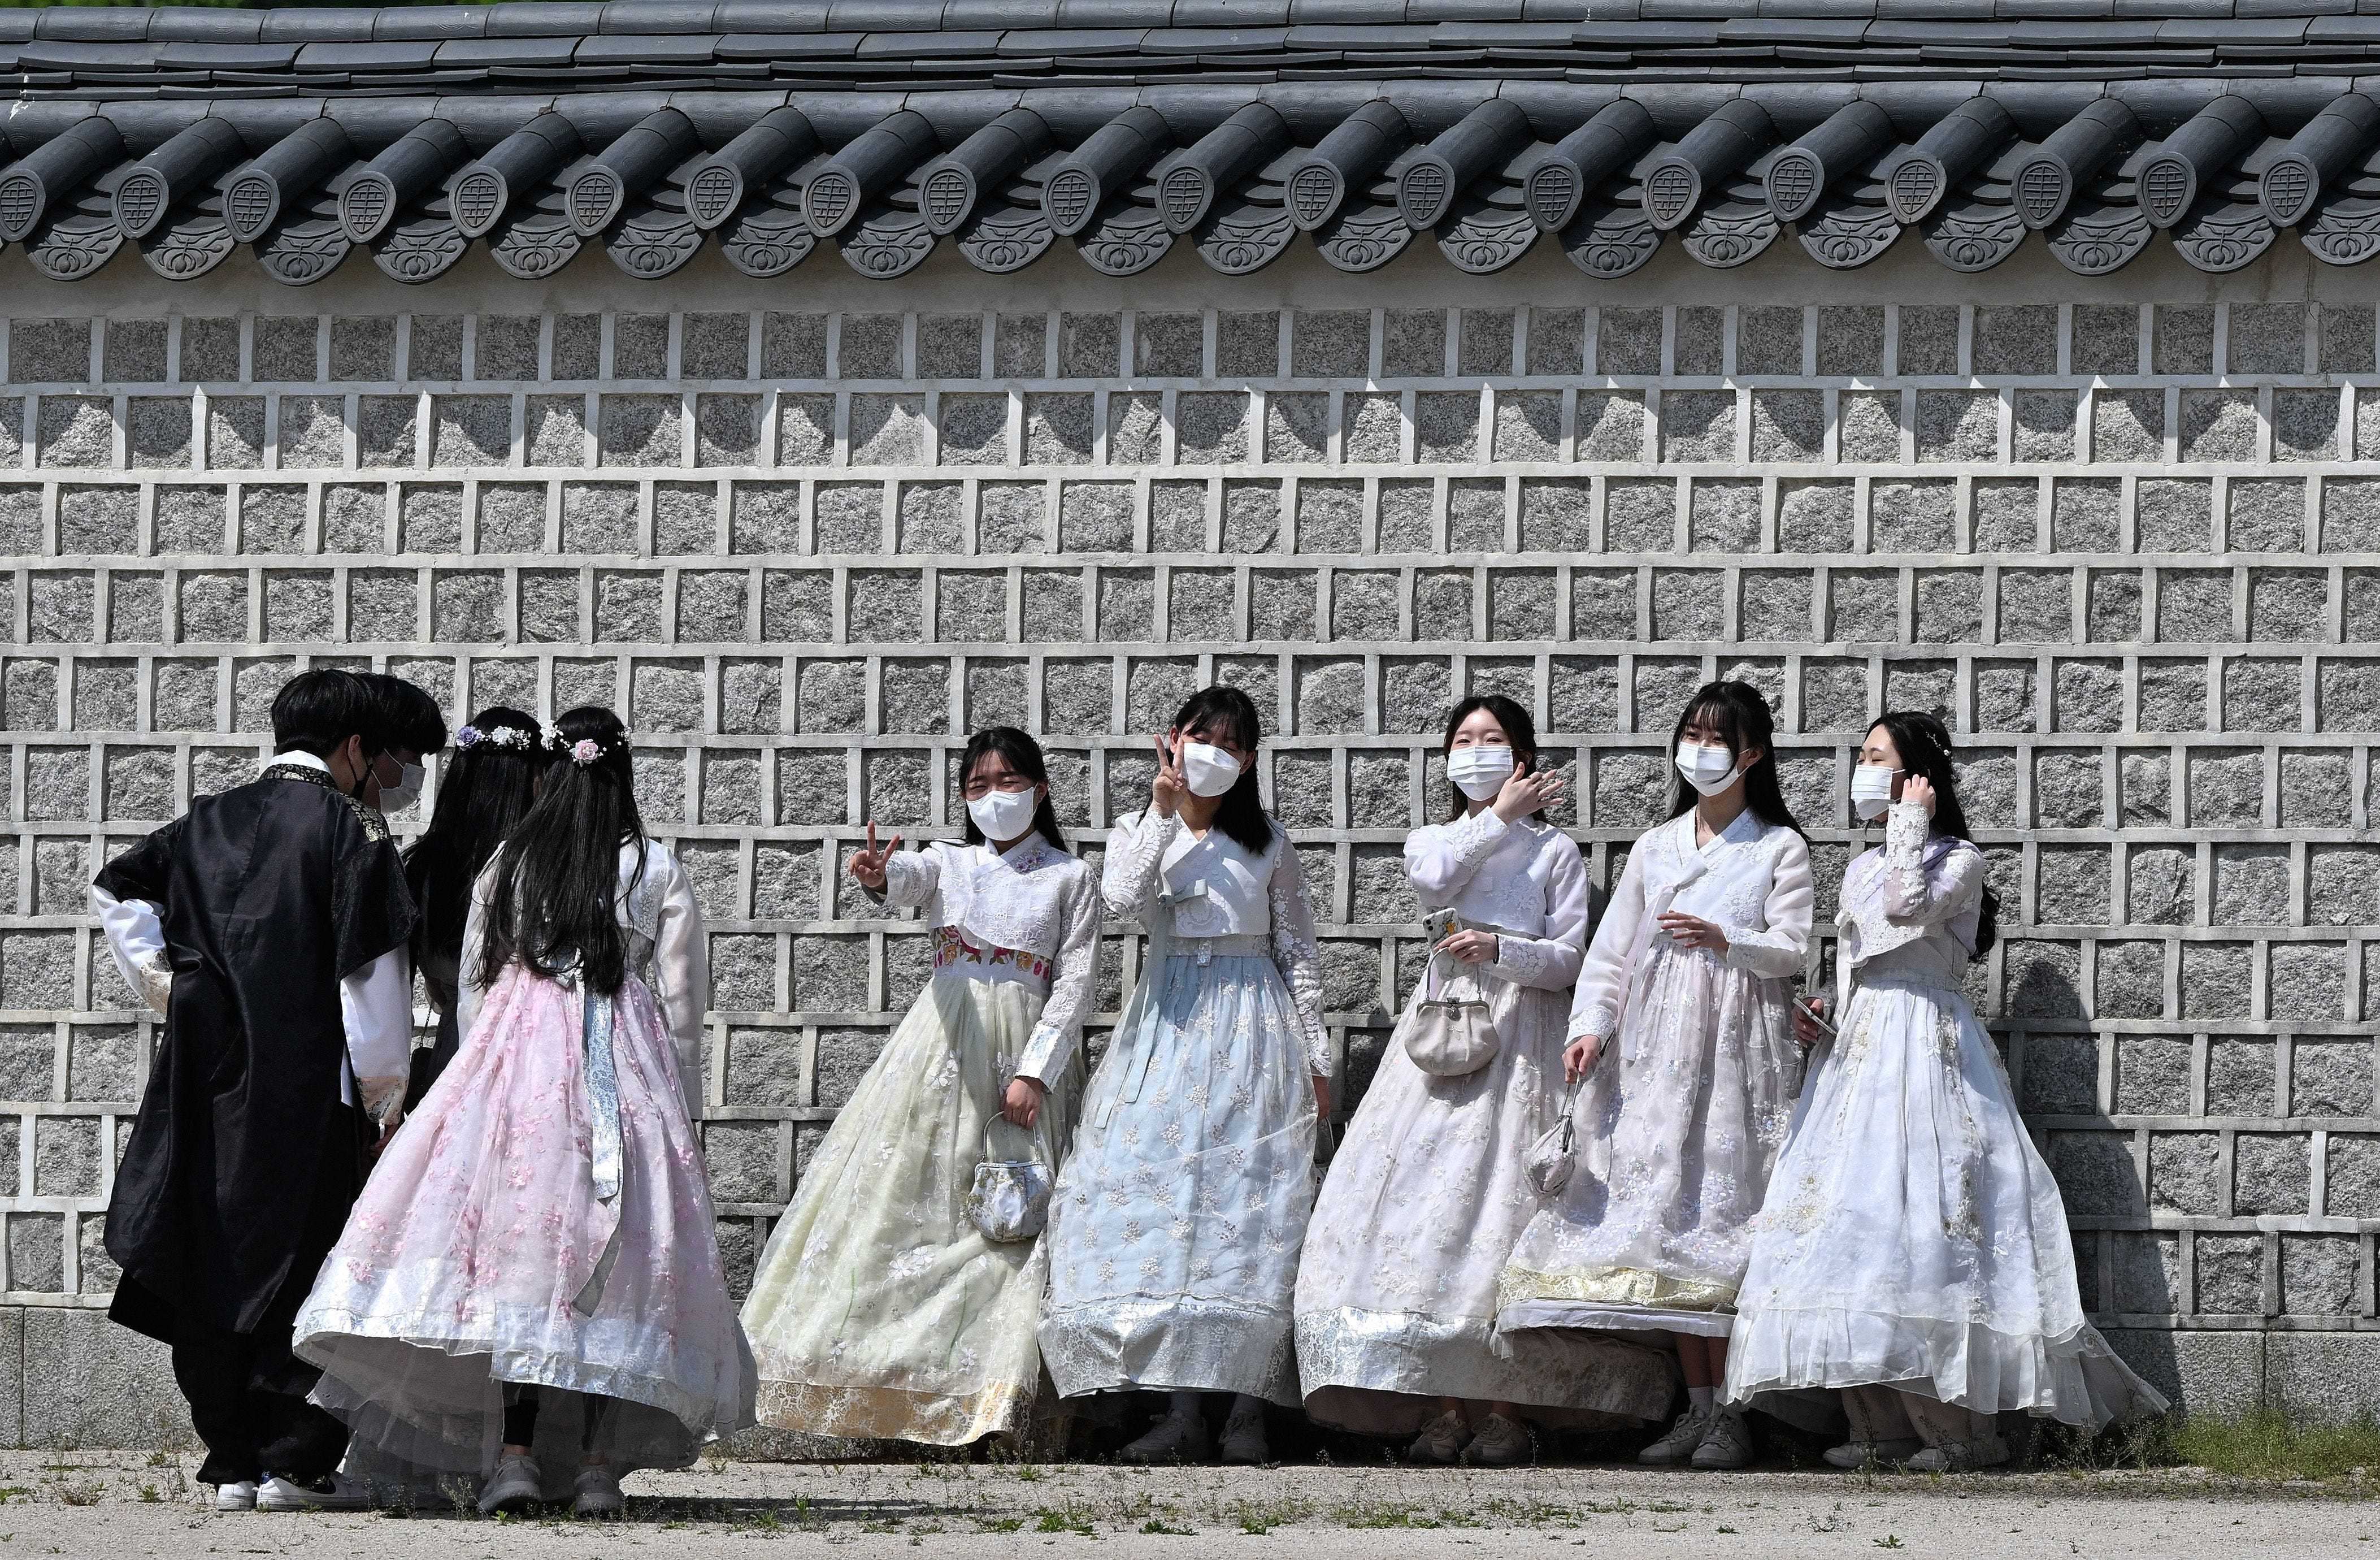 Besucher in traditioneller Hanbok-Kleidung posieren am 2. Mai 2022 im Gyeongbokgung-Palast in Seoul für Fotos, nachdem Südkorea sein Außenmasken-Mandat als Reaktion auf einen stetigen Rückgang der Covid-19-Fälle aufgehoben hatte.